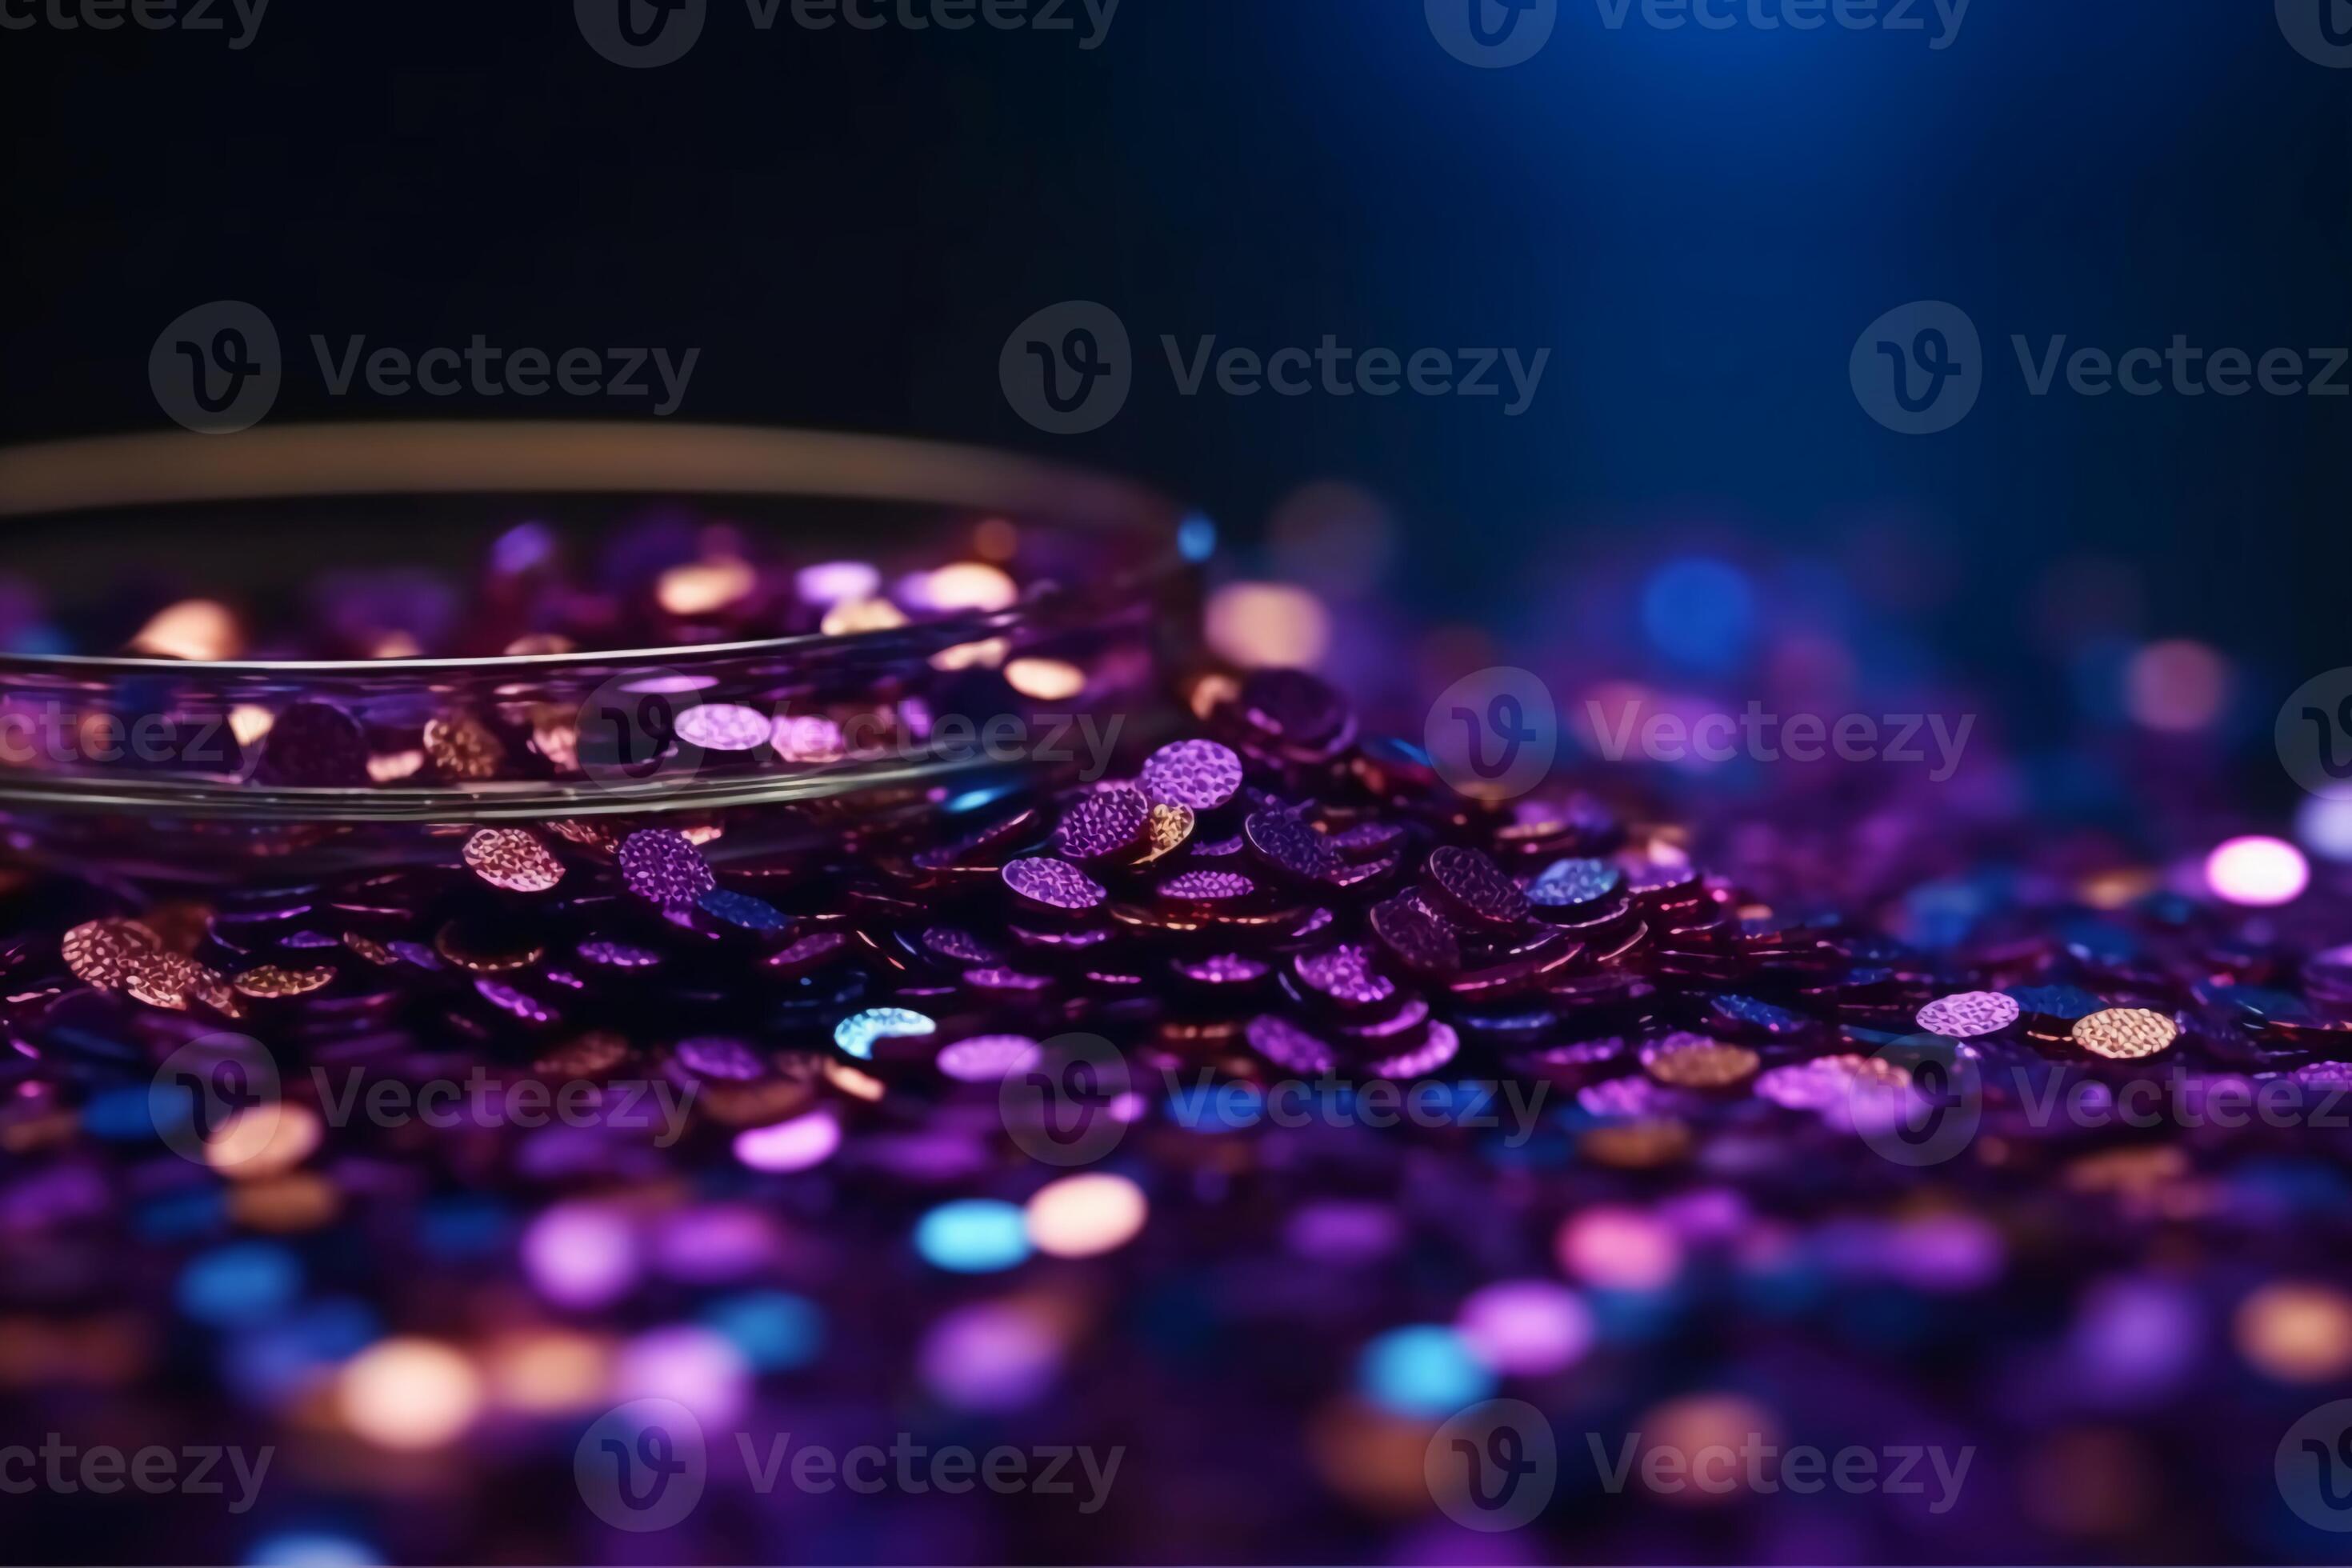 Falling Glitter wallpaper by TetriTek - Download on ZEDGE™ | 2305